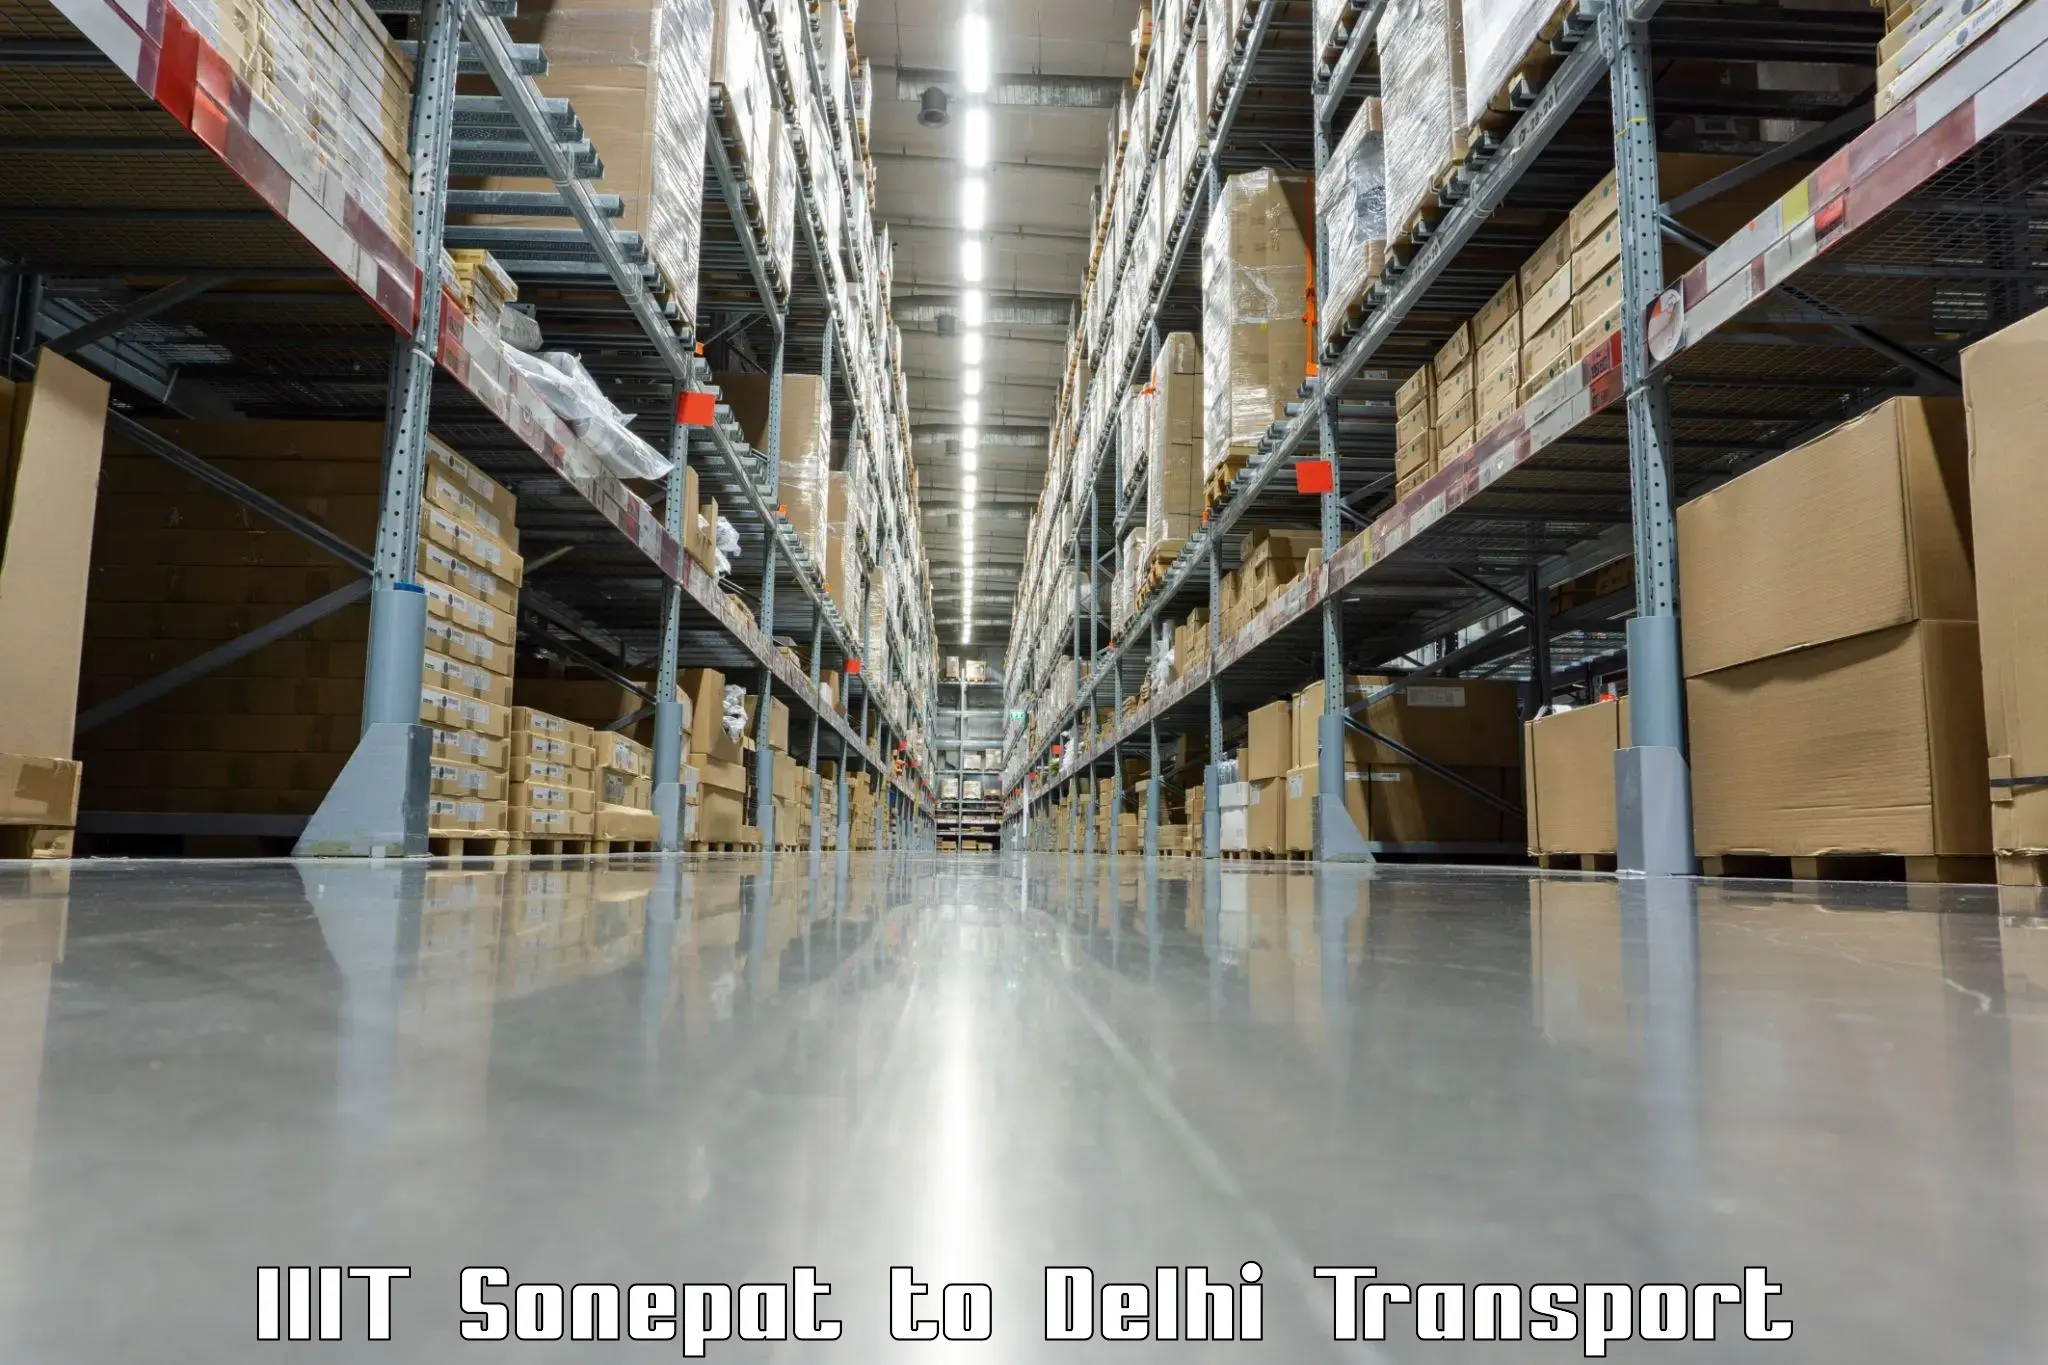 Online transport service IIIT Sonepat to Krishna Nagar